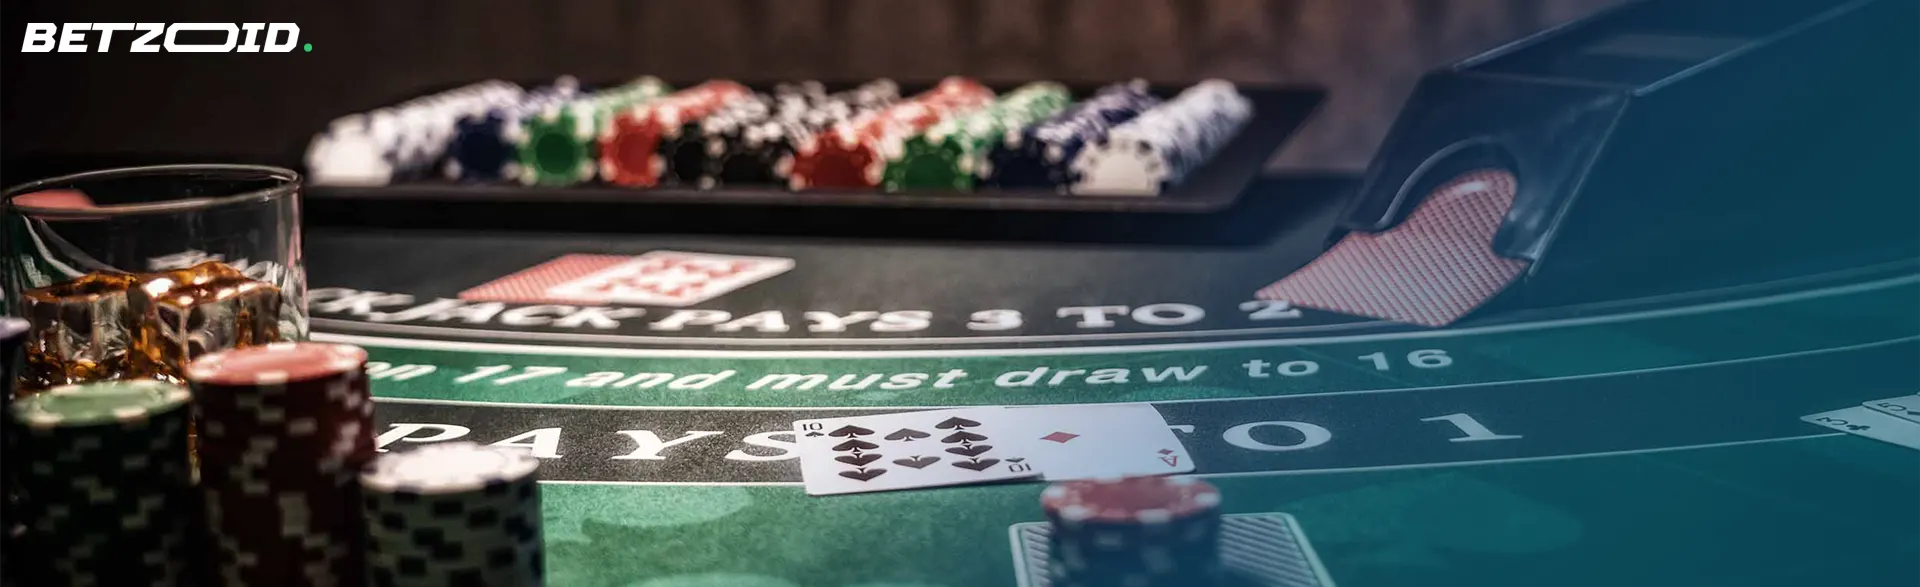 Game table in 400% bonus casinos.